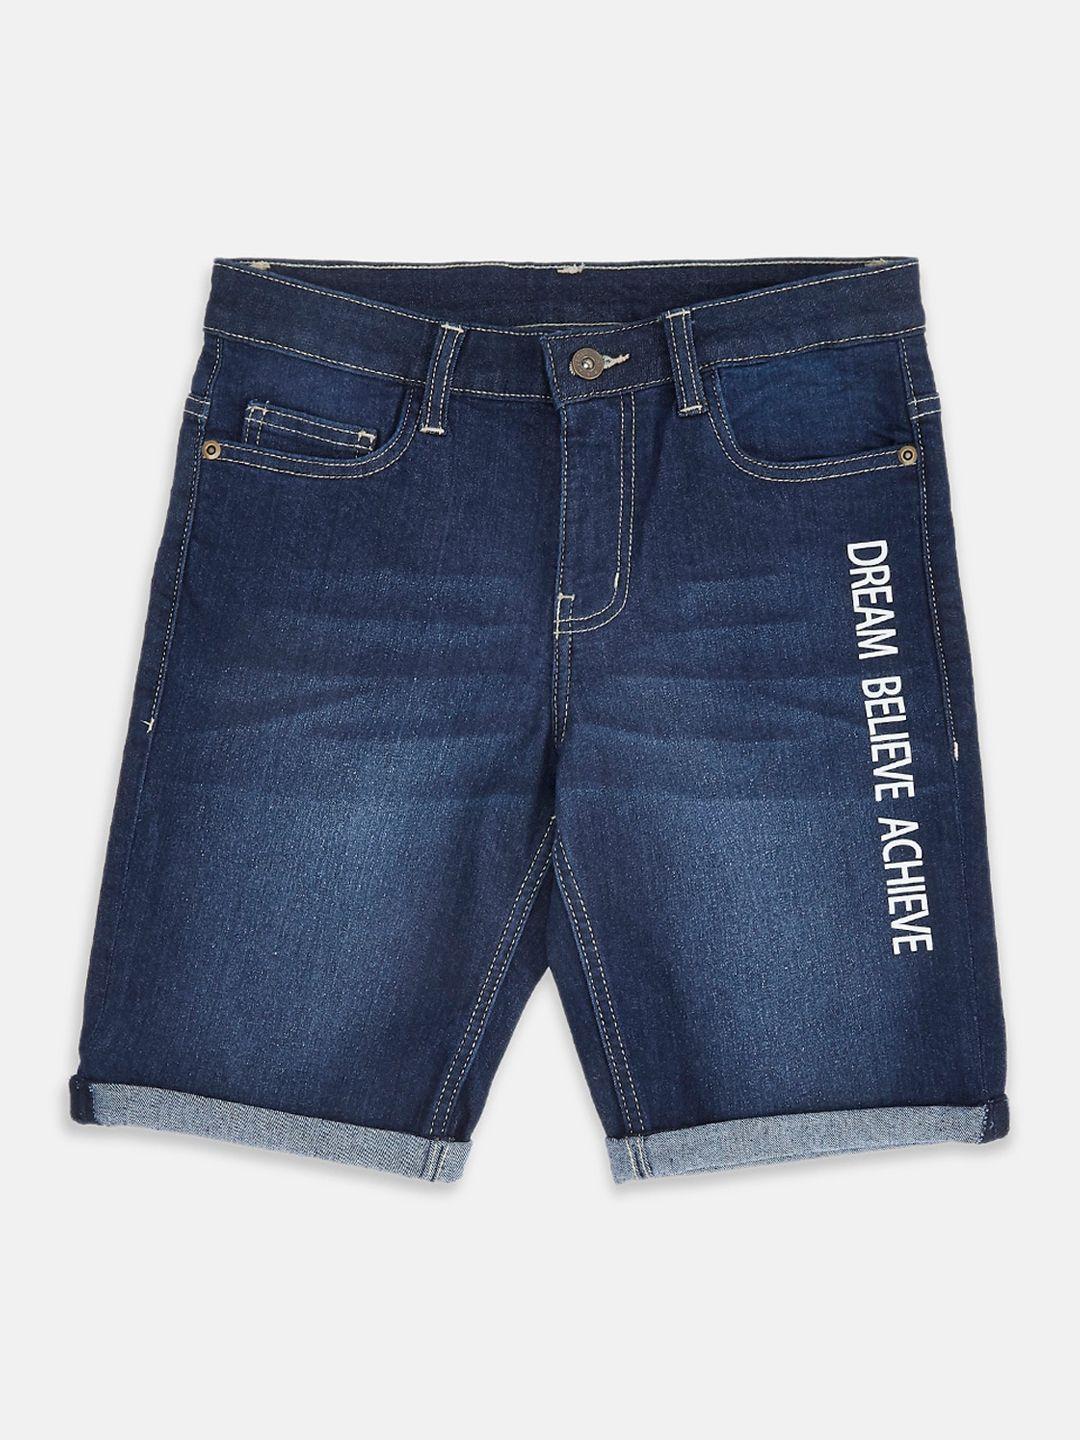 pantaloons junior boys blue denim shorts